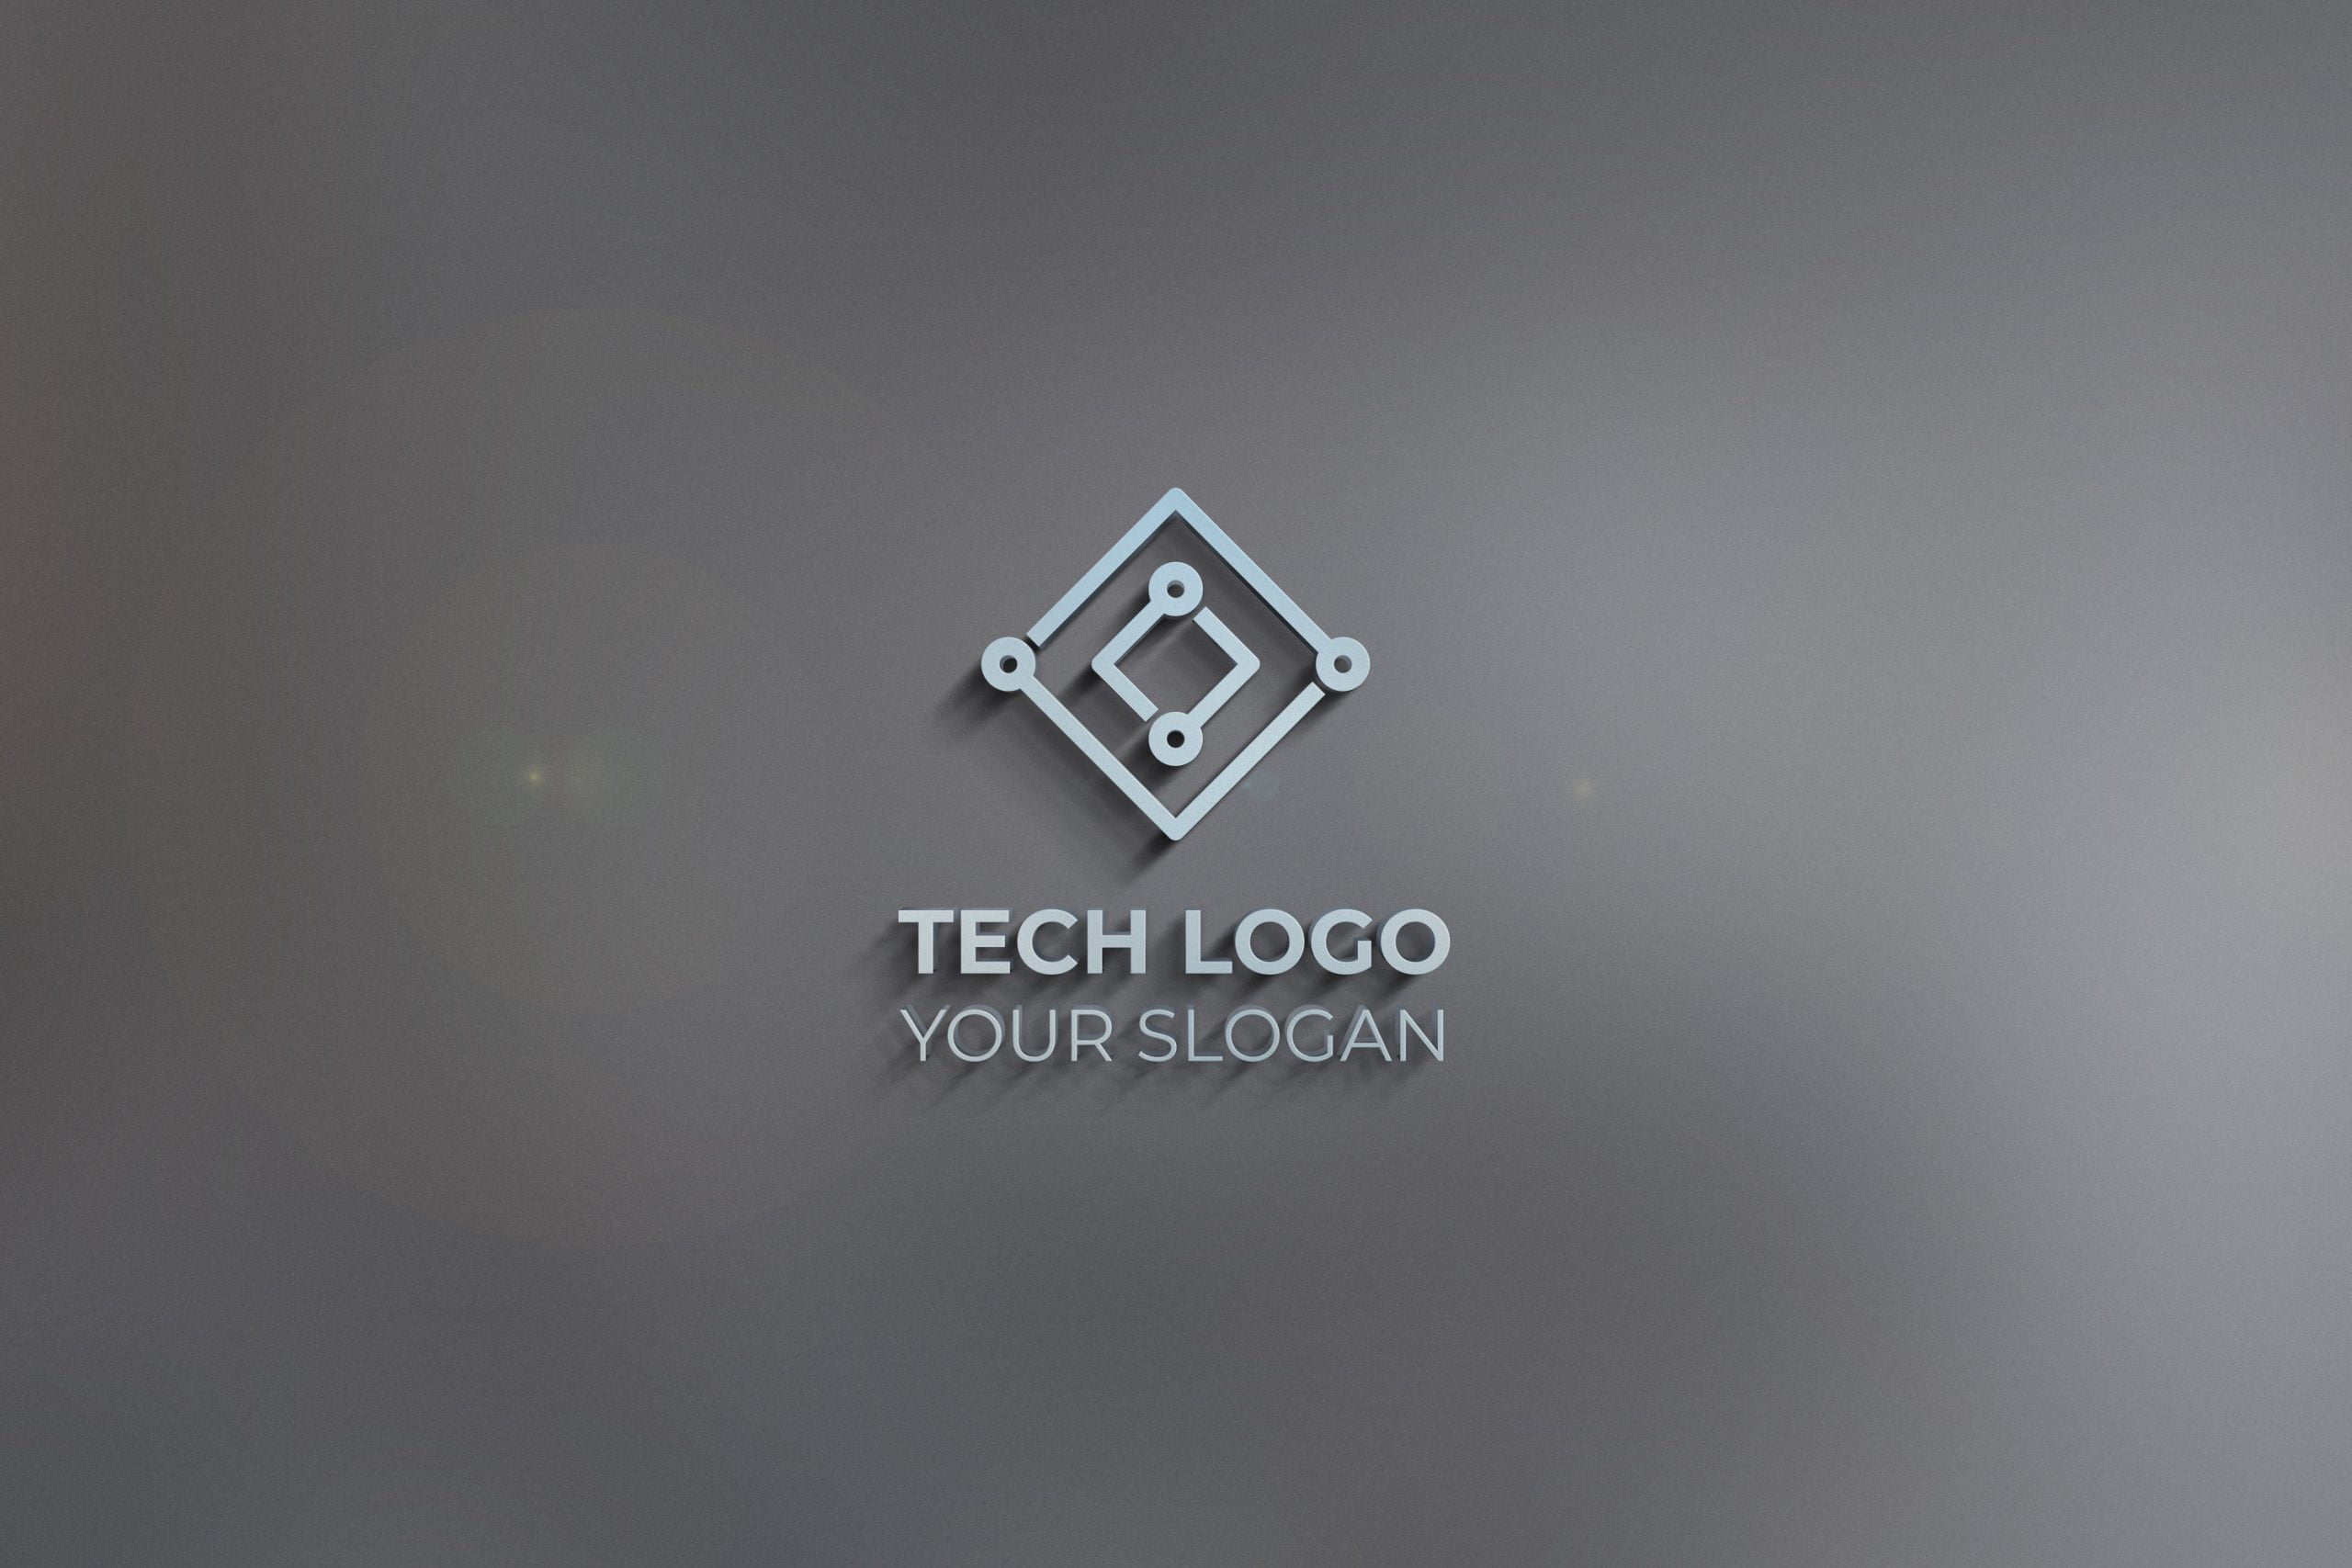 3d tech logo design